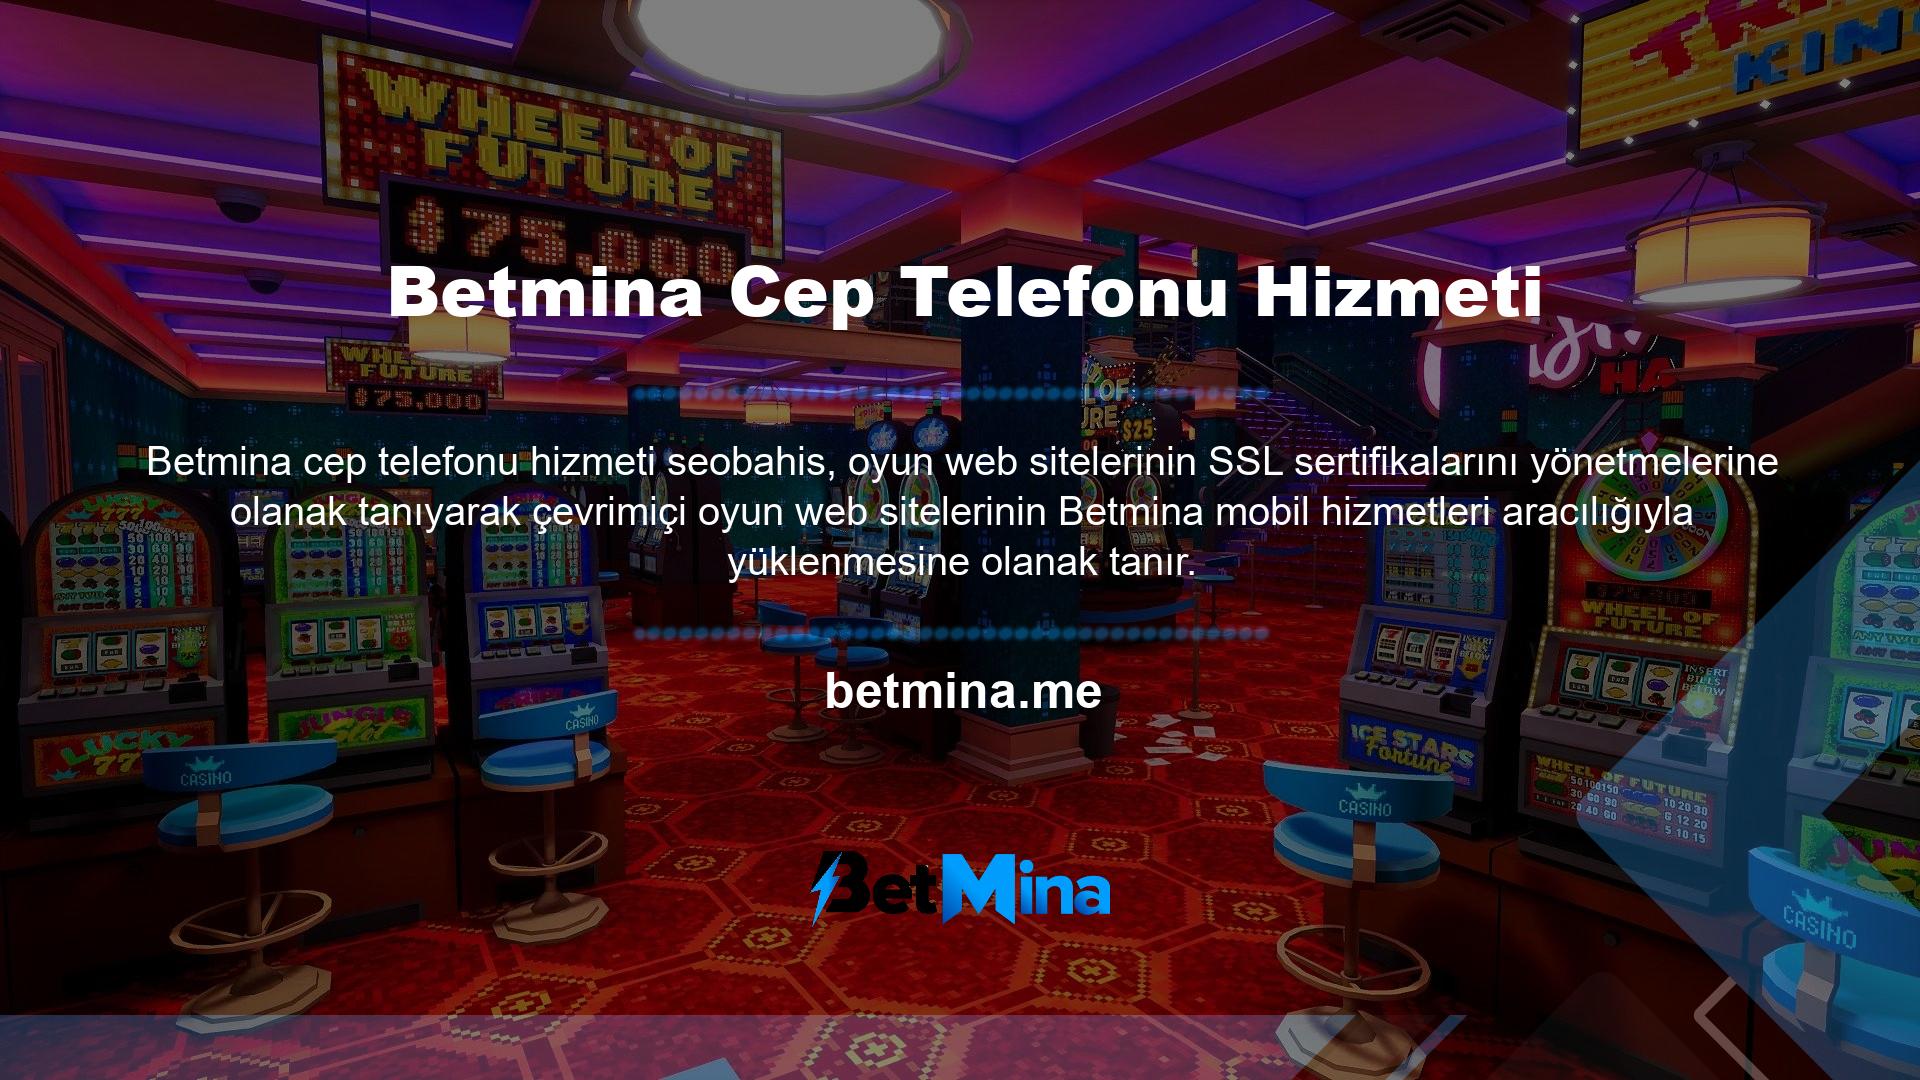 Betmina cep telefonu hizmetimiz üyelerine web tabanlı mobil ve masaüstü uygulamalar sağlıyoruz